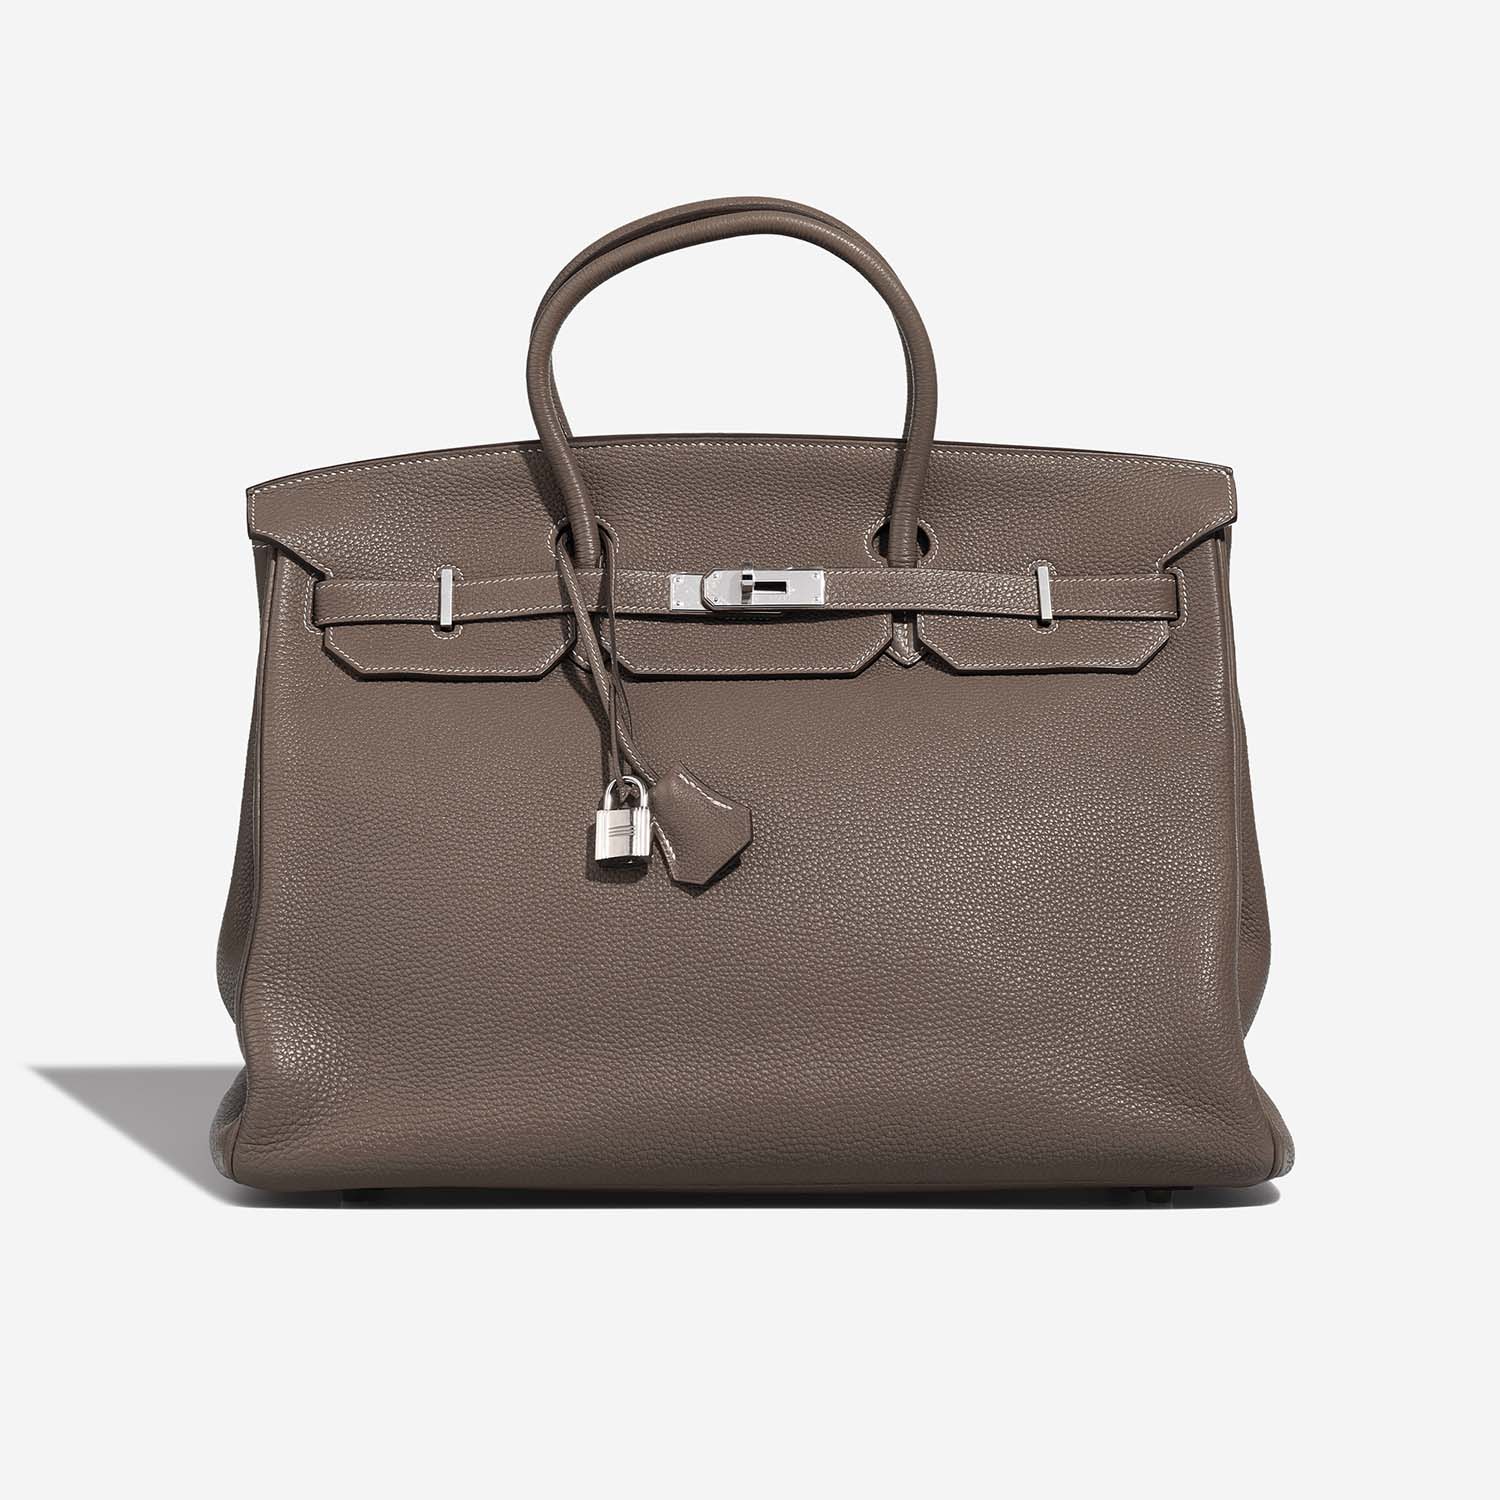 Hermès Birkin 40 Etoupe Front S | Verkaufen Sie Ihre Designer-Tasche auf Saclab.com